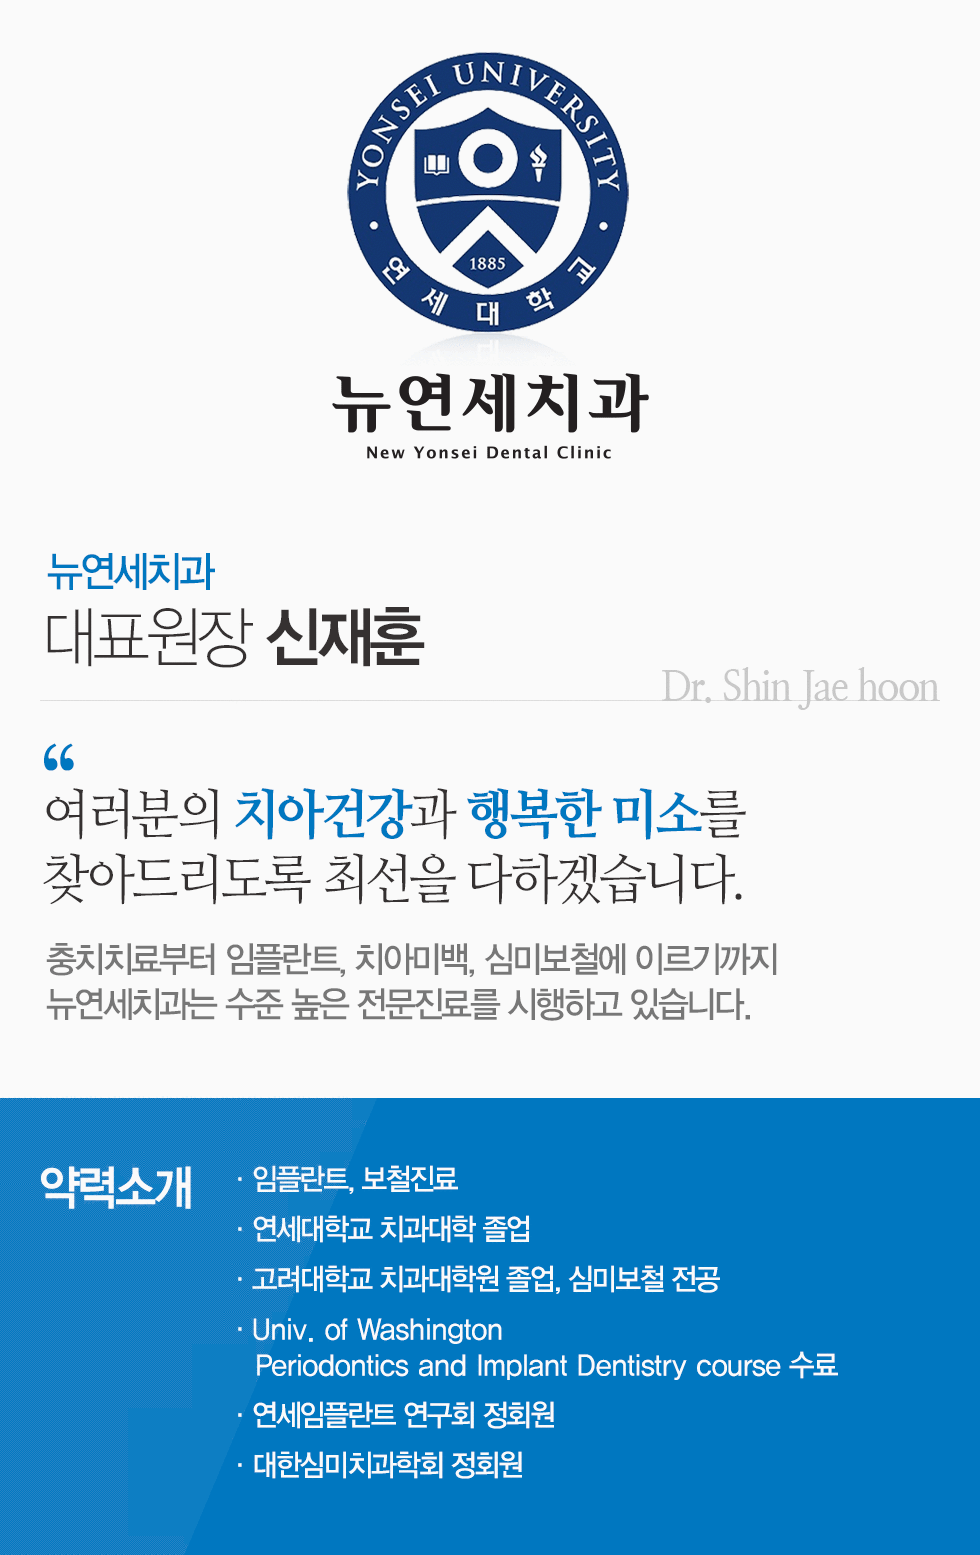 대표원장 신재훈 